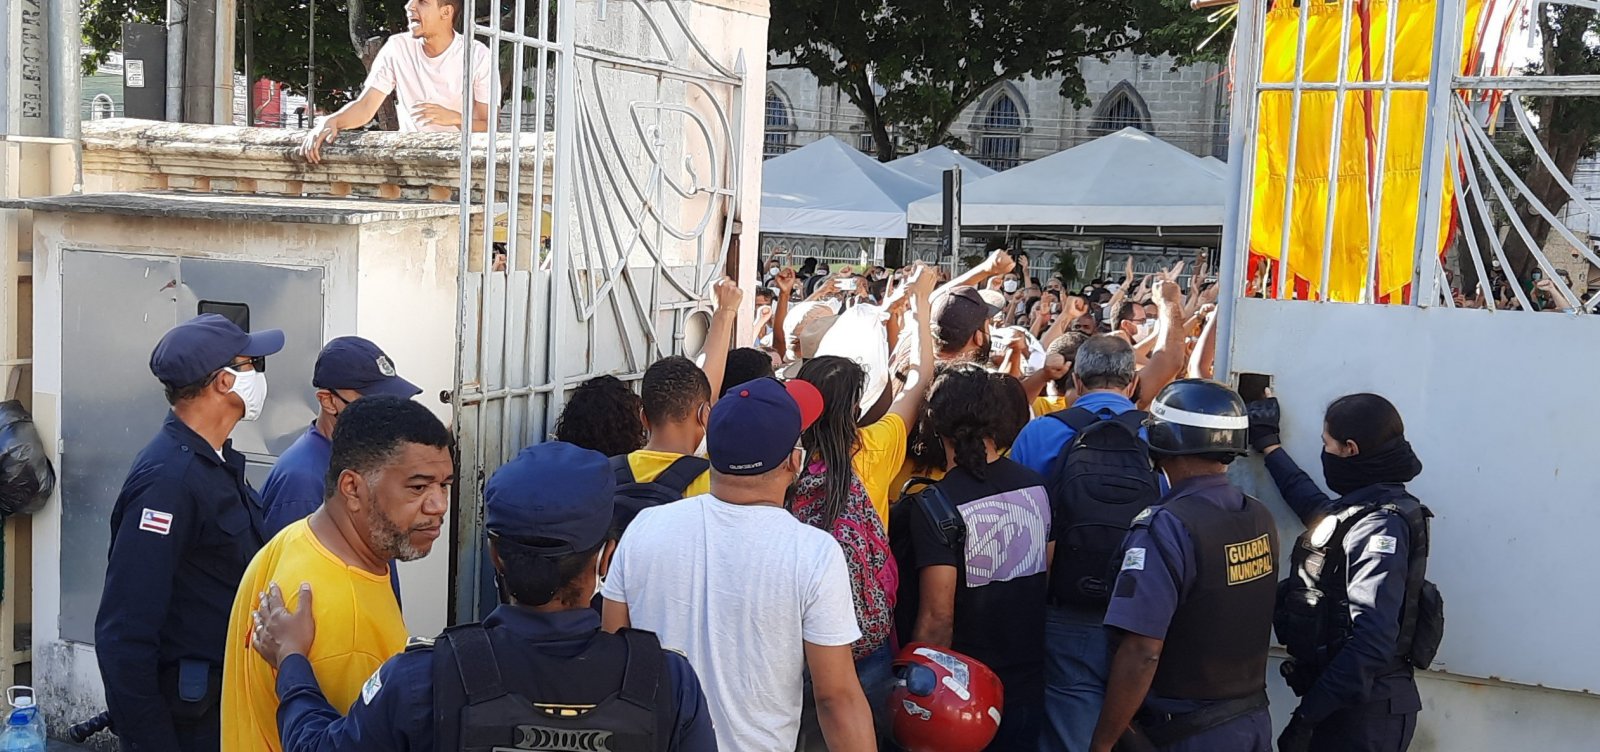 Após casos de violência, liminar ordena saída de professores do prédio da prefeitura de Feira